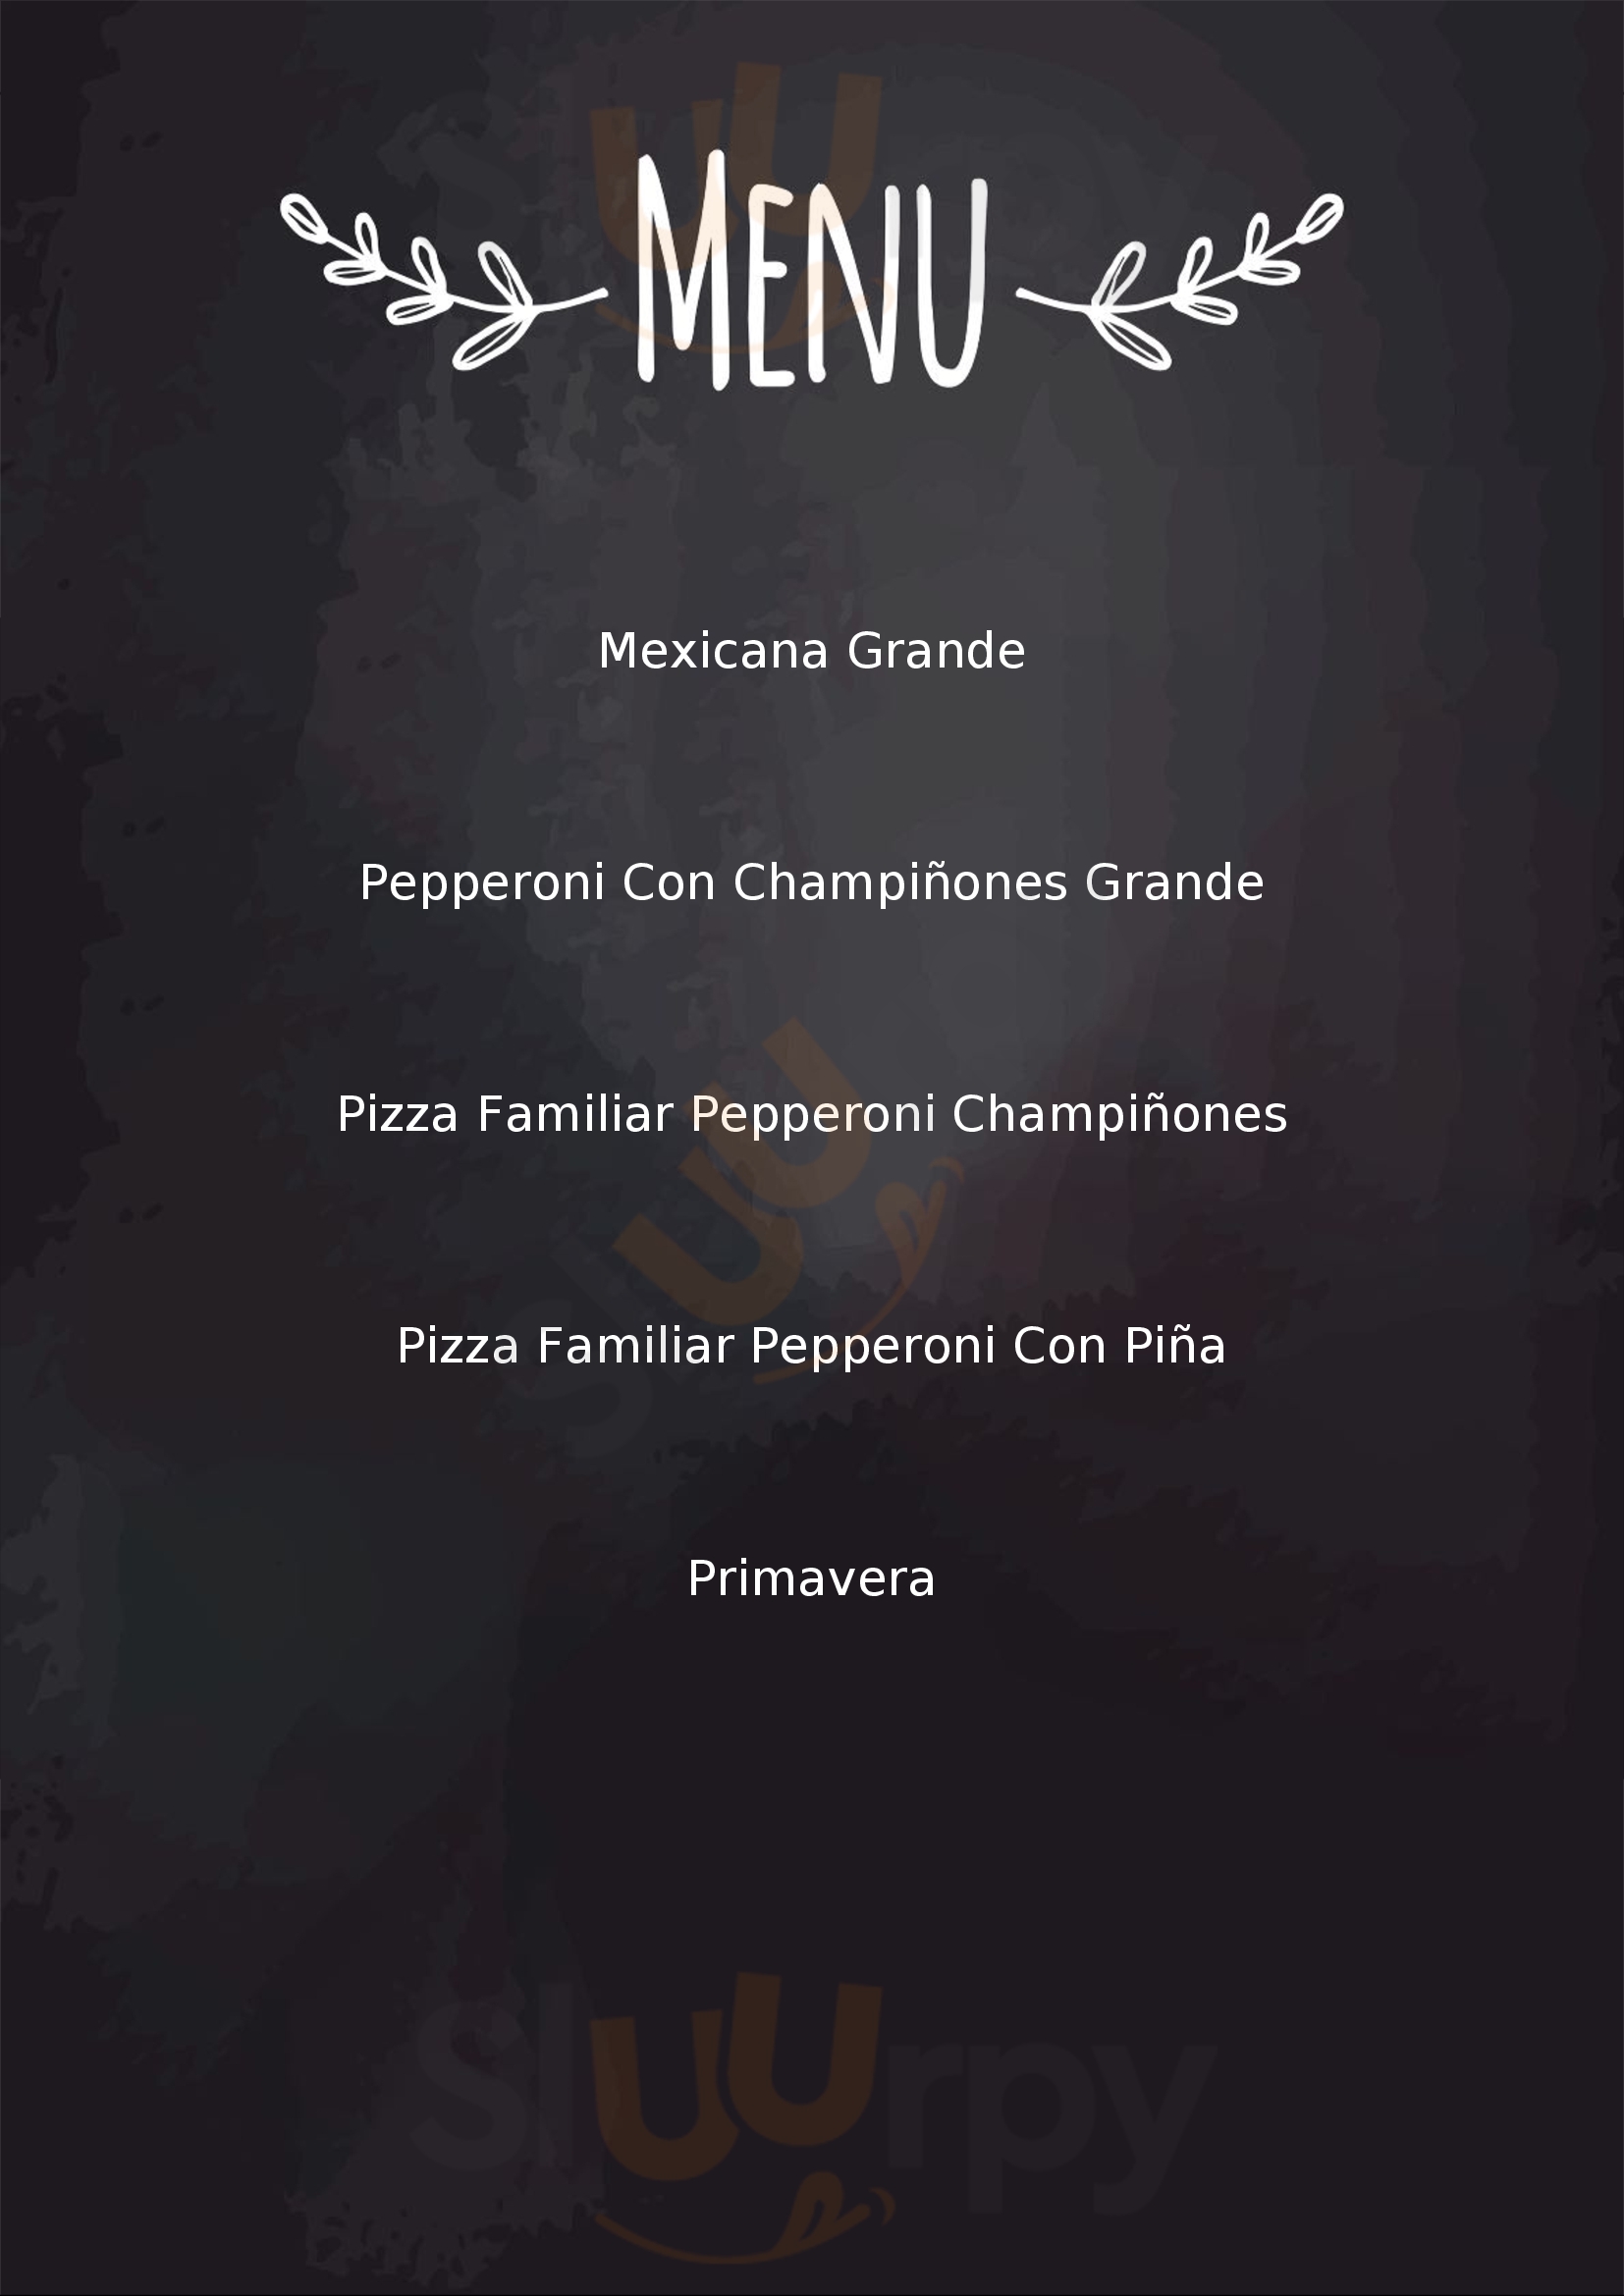 Abuelita's Pizza Santiago de Querétaro Menu - 1